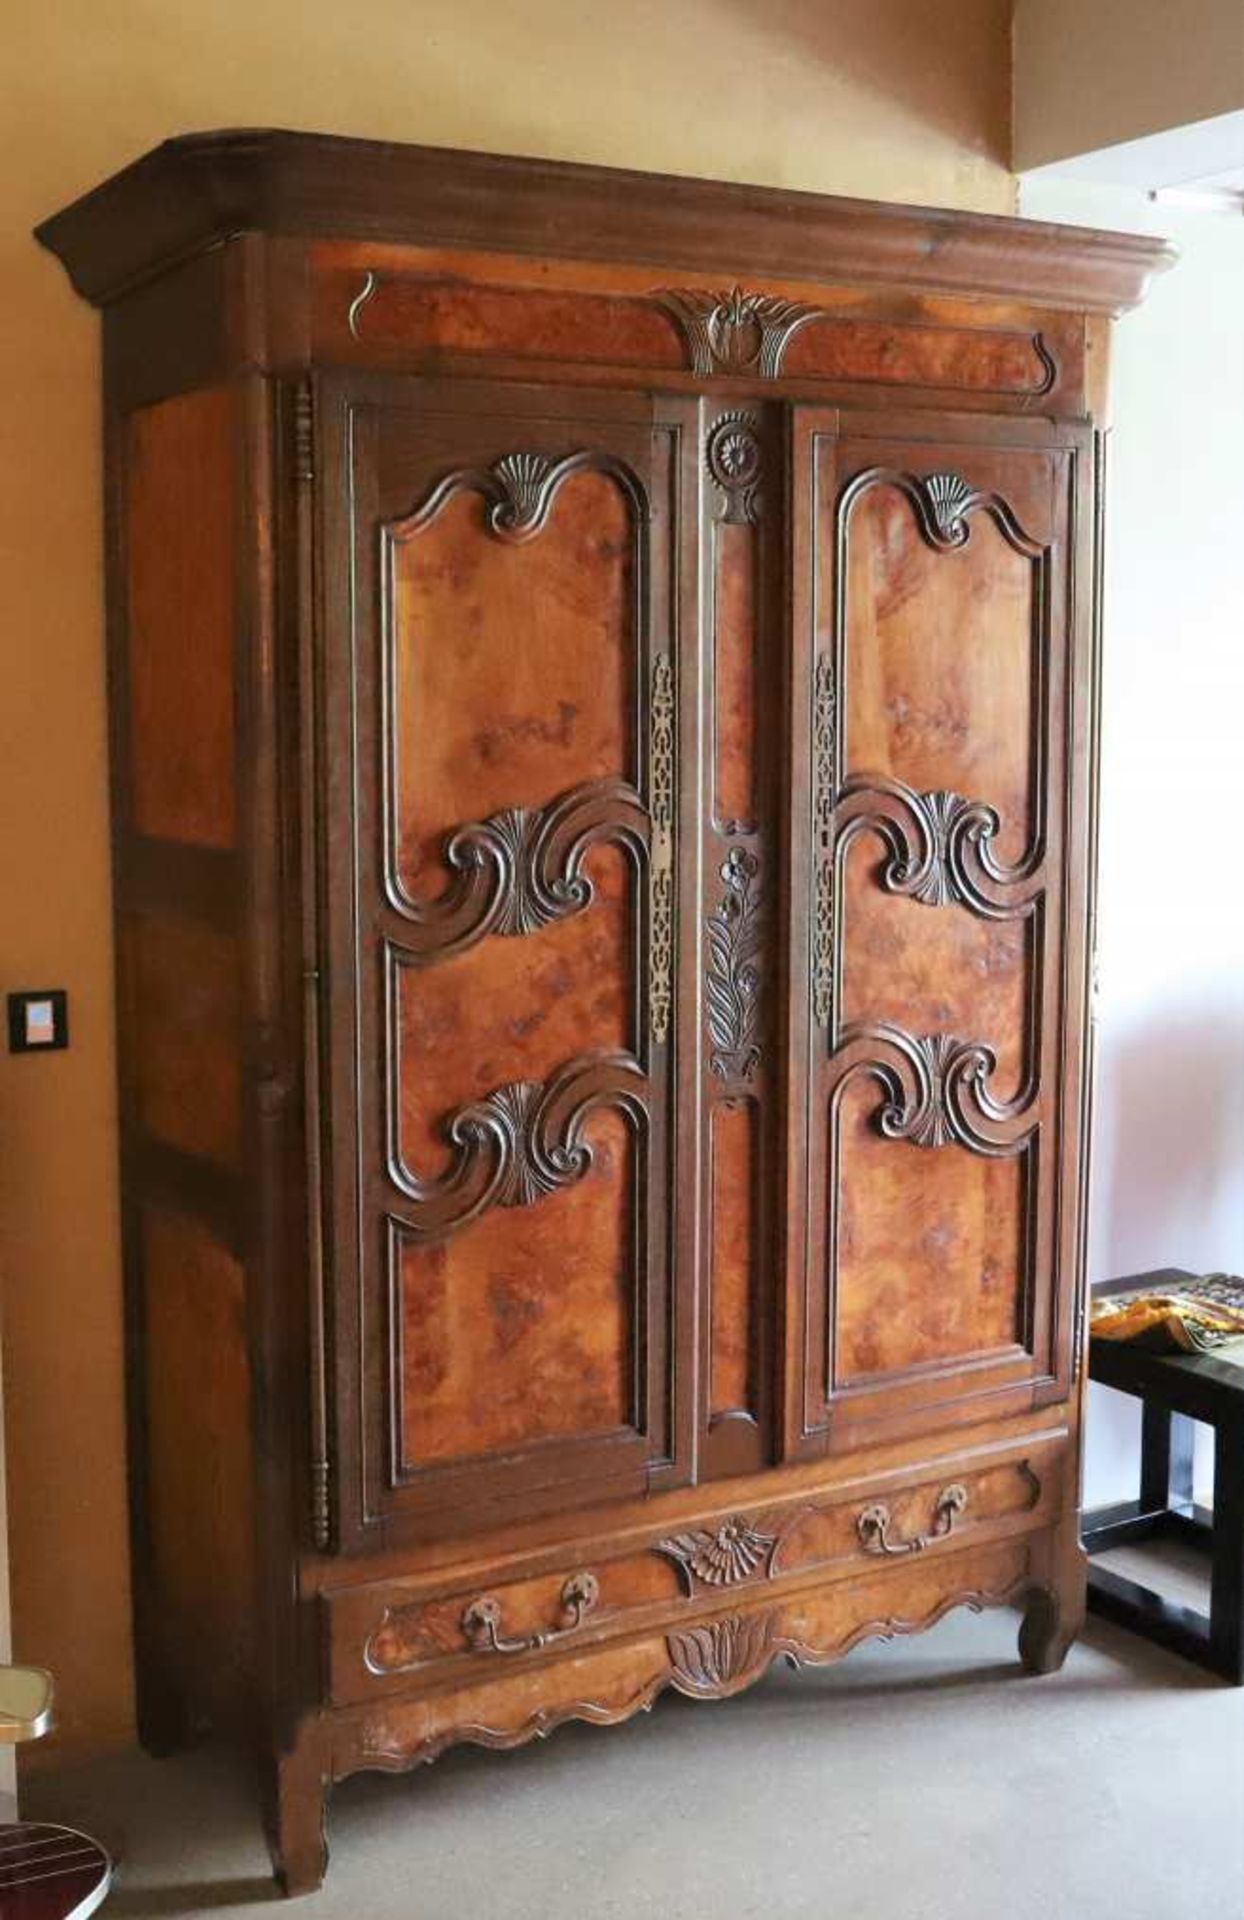 Jolie petite armoire Bressane Louis XVBati en bois de chêne finement sculpté. Ouvrant par deux